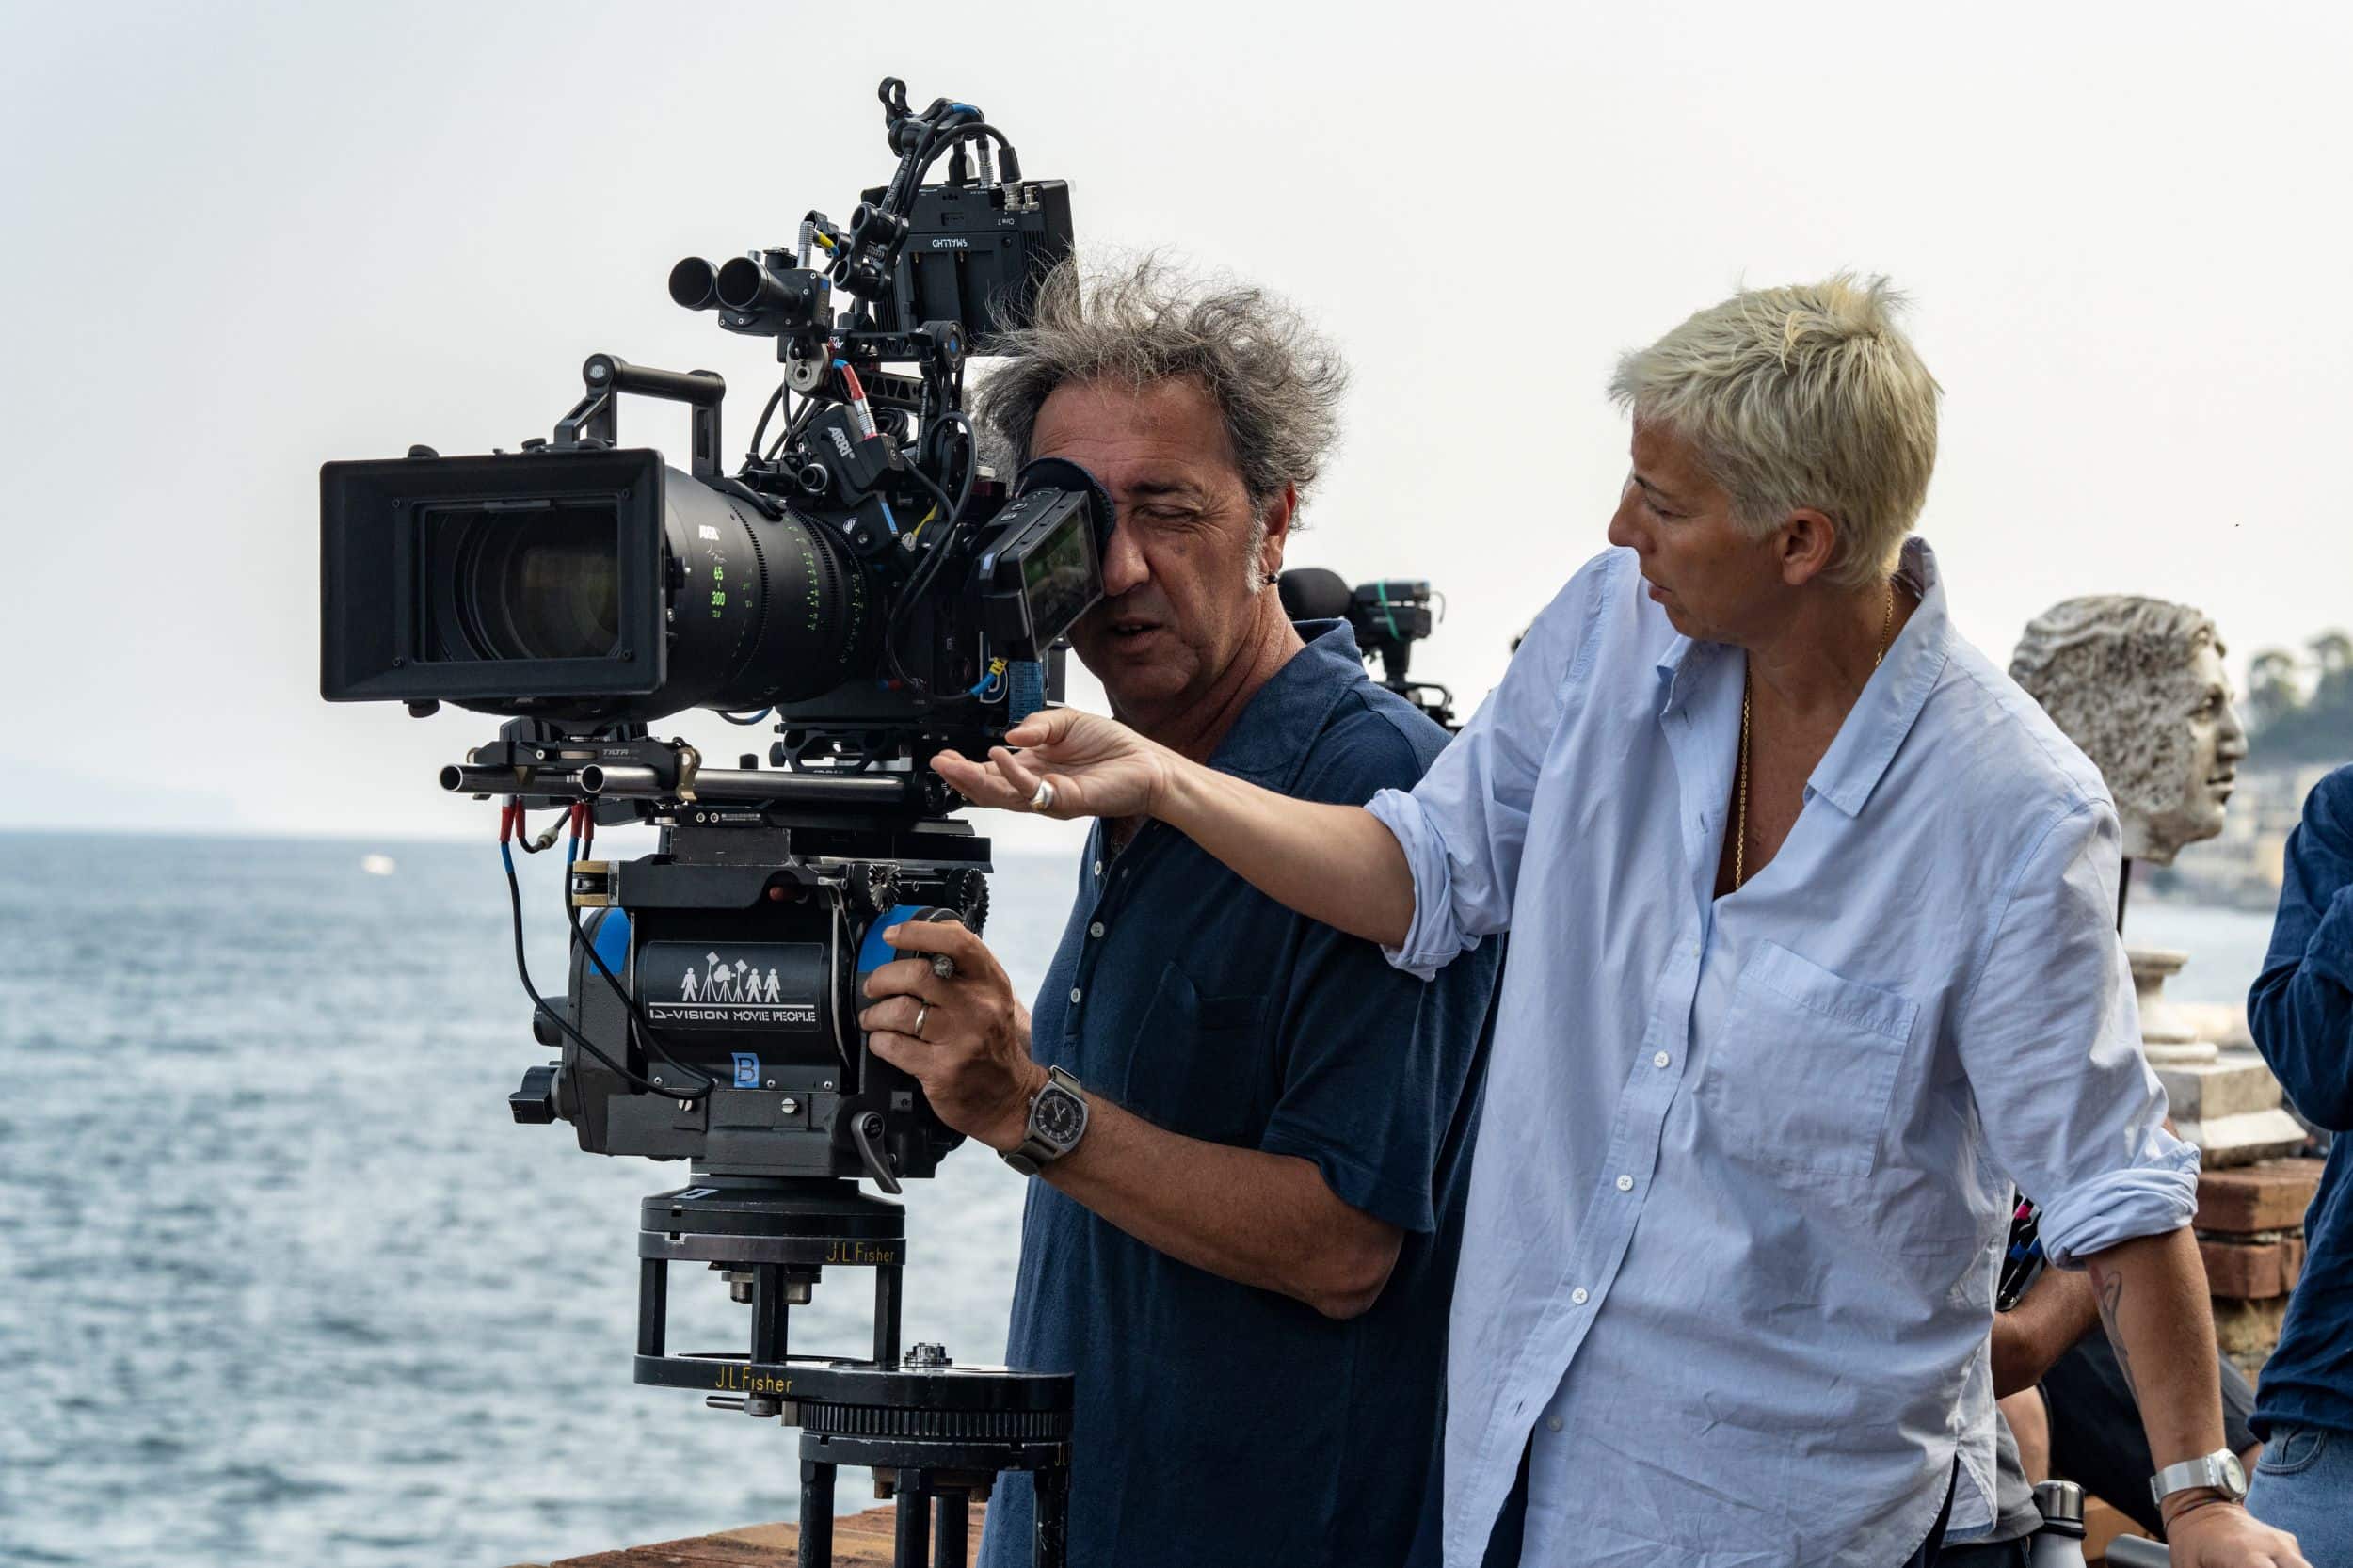 Paolo Sorrentino e Daria D'Antonio mentre filmano Parthenope